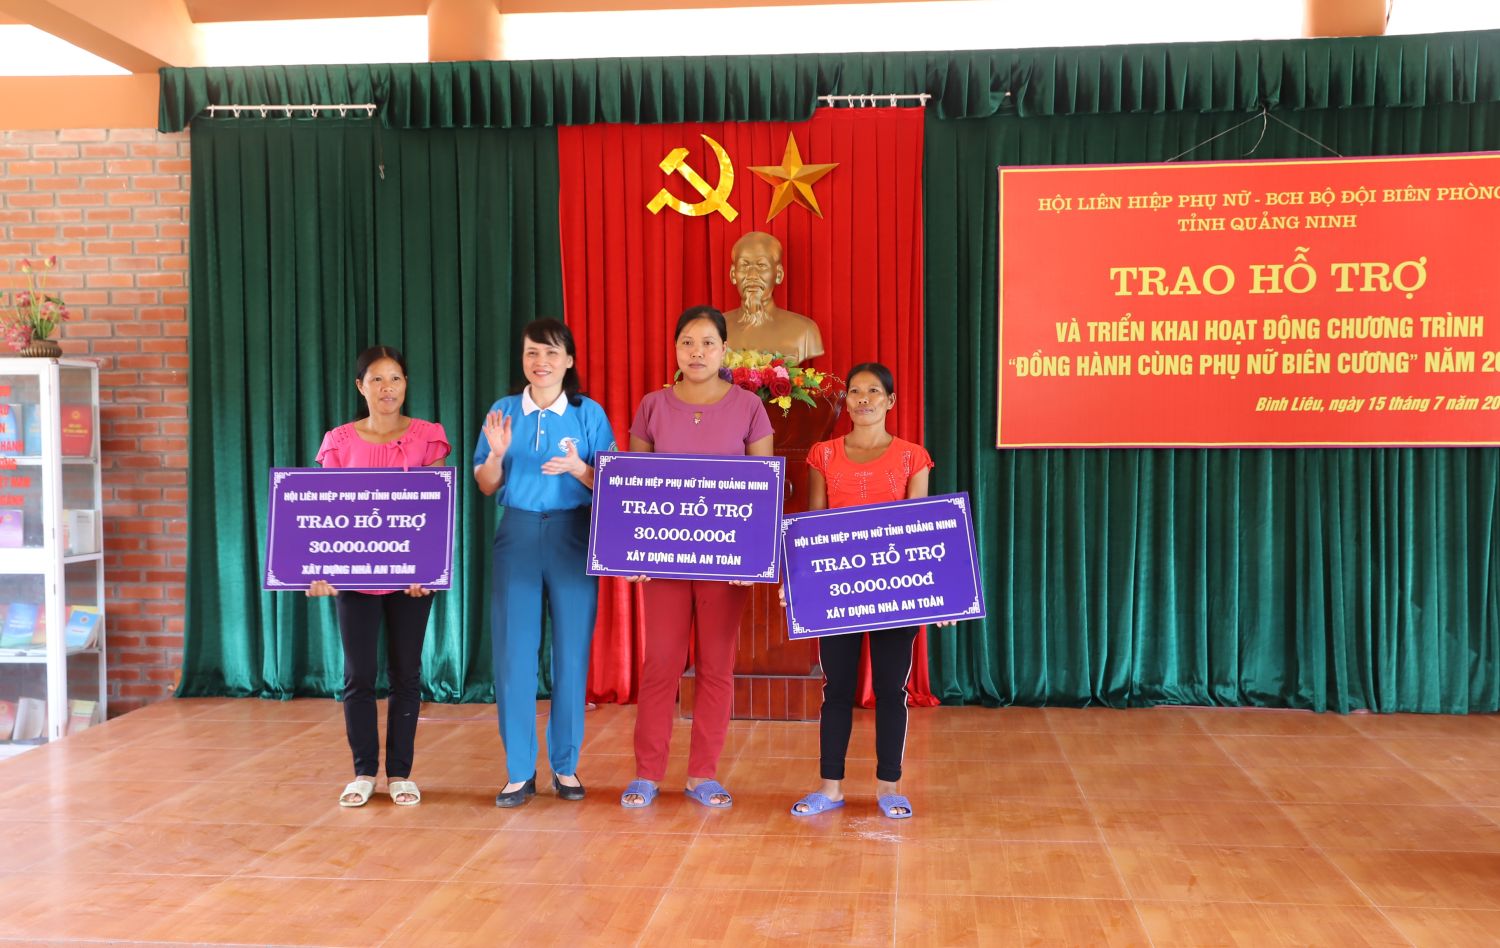 Bà Nguyễn Thị Vinh, Chủ tịch Hội LHPN tỉnh trao hỗ trợ xây dựng nhà an toàn cho phụ nữ khó khăn trên địa bàn huyện Bình Liêu